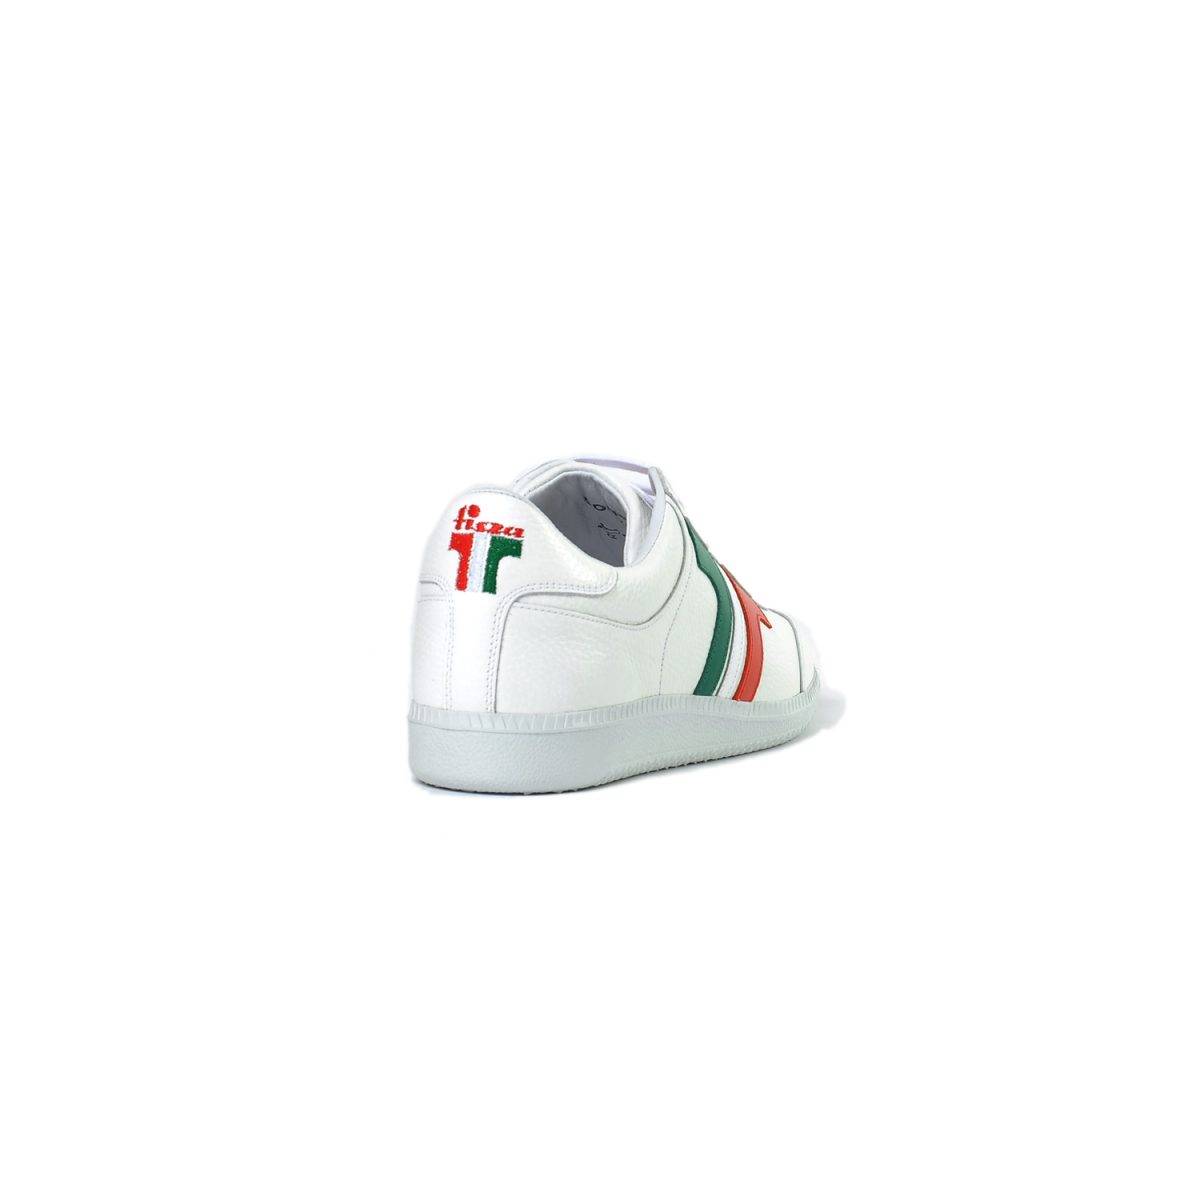 Tisza shoes - Compakt - White-tricolor